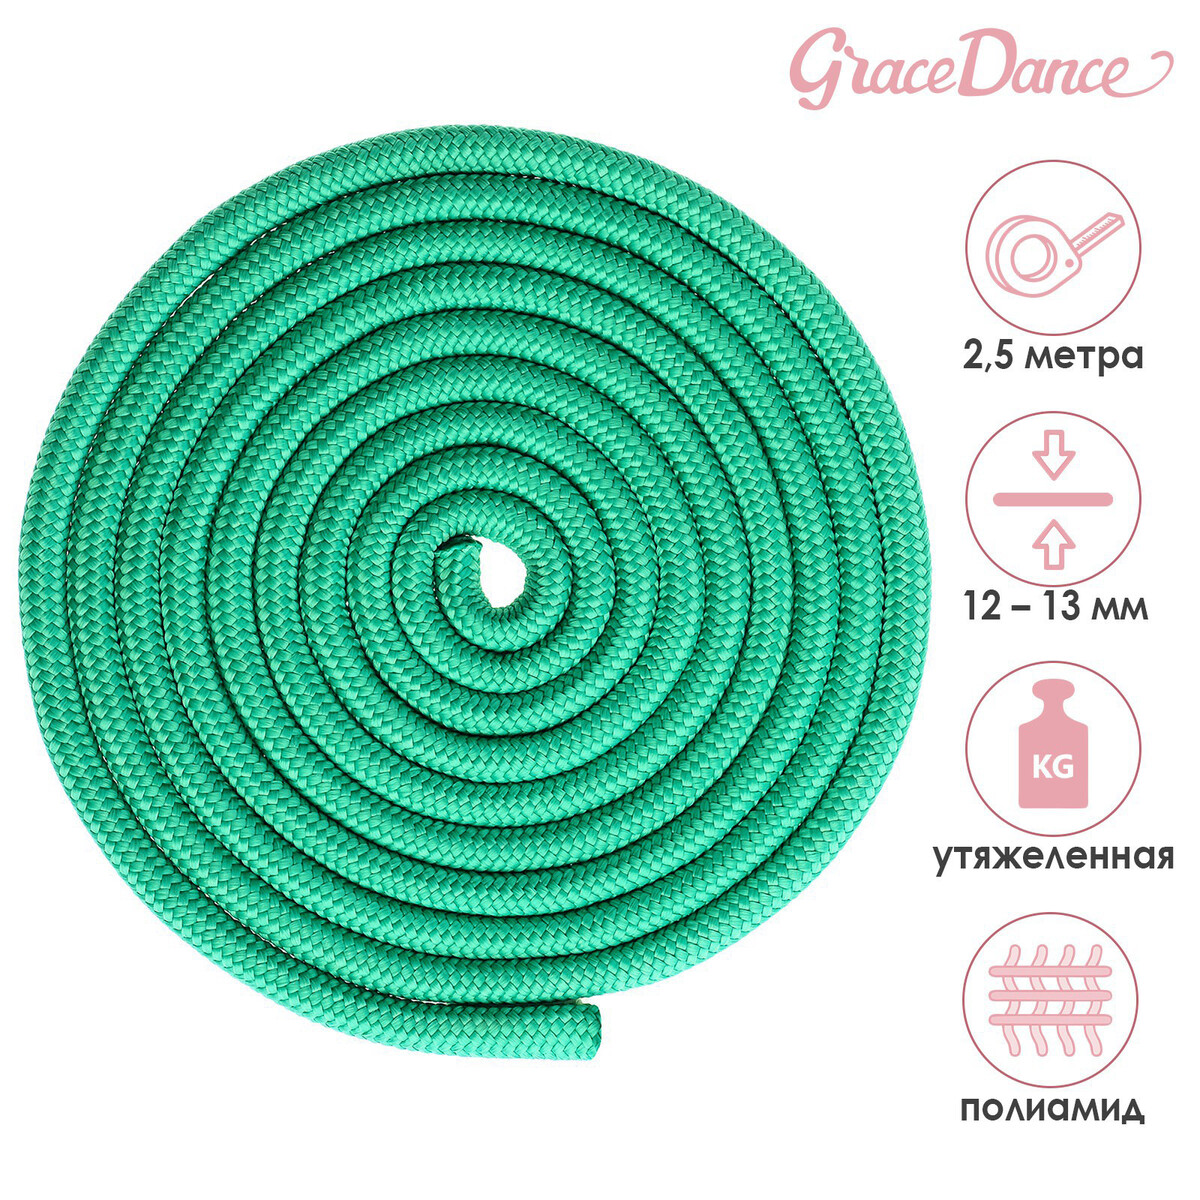 Скакалка для художественной гимнастики утяжеленная grace dance, 2,5 м, цвет зеленый скакалка для художественной гимнастики утяжеленная grace dance 3 м желтый